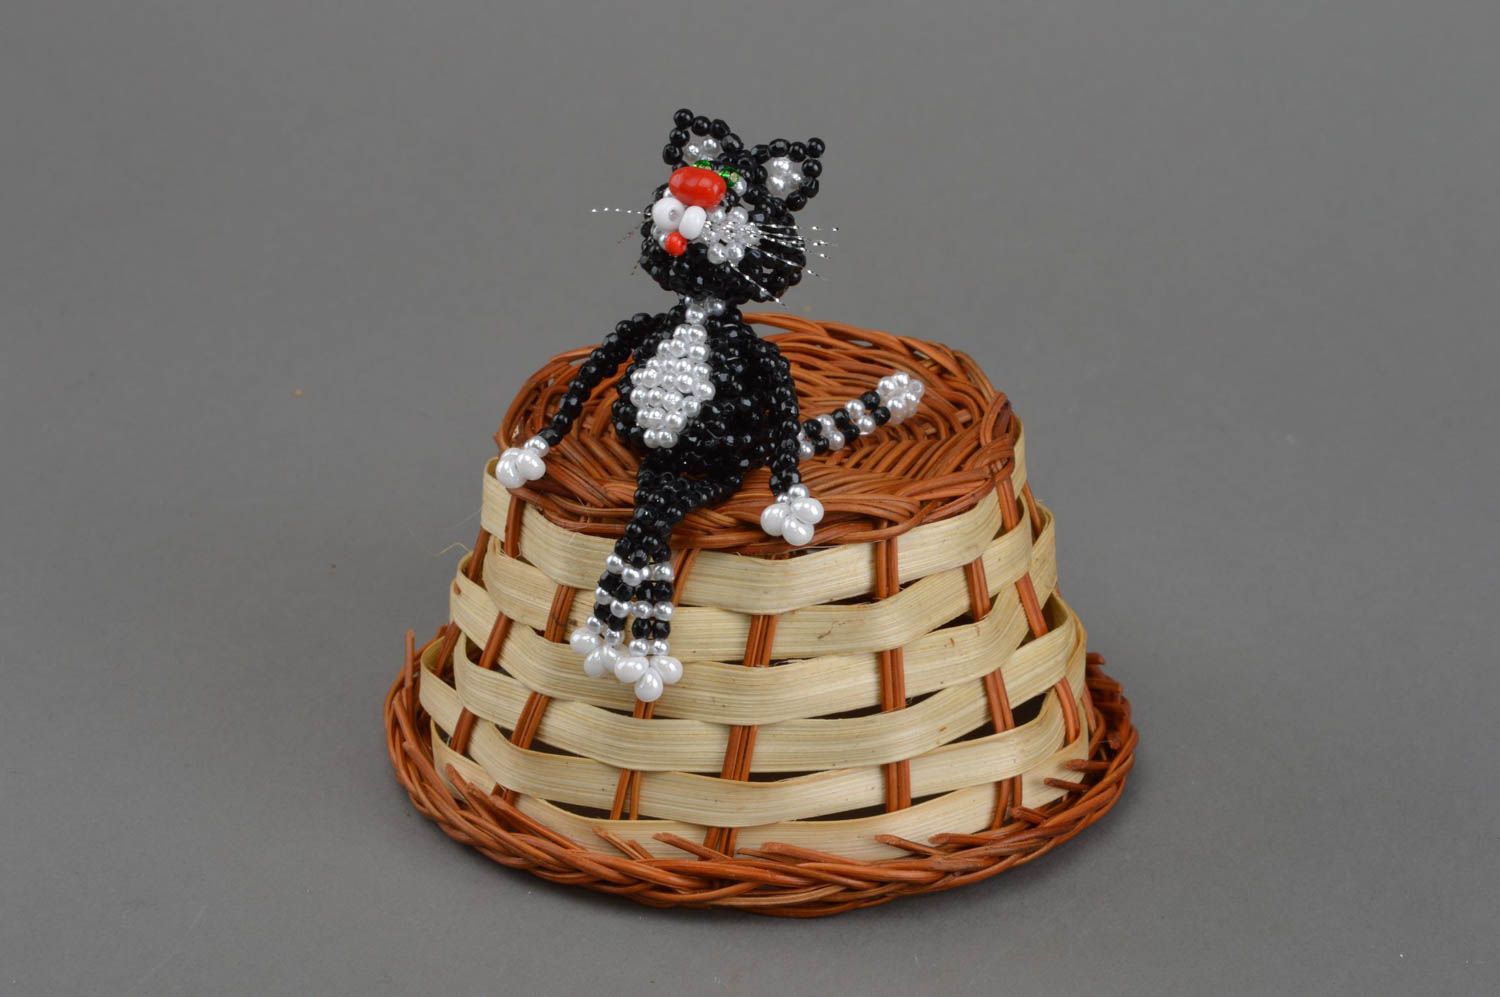 Фигурка кота из бисера с технике плетения для коллекции и декора хэнд мэйд фото 3